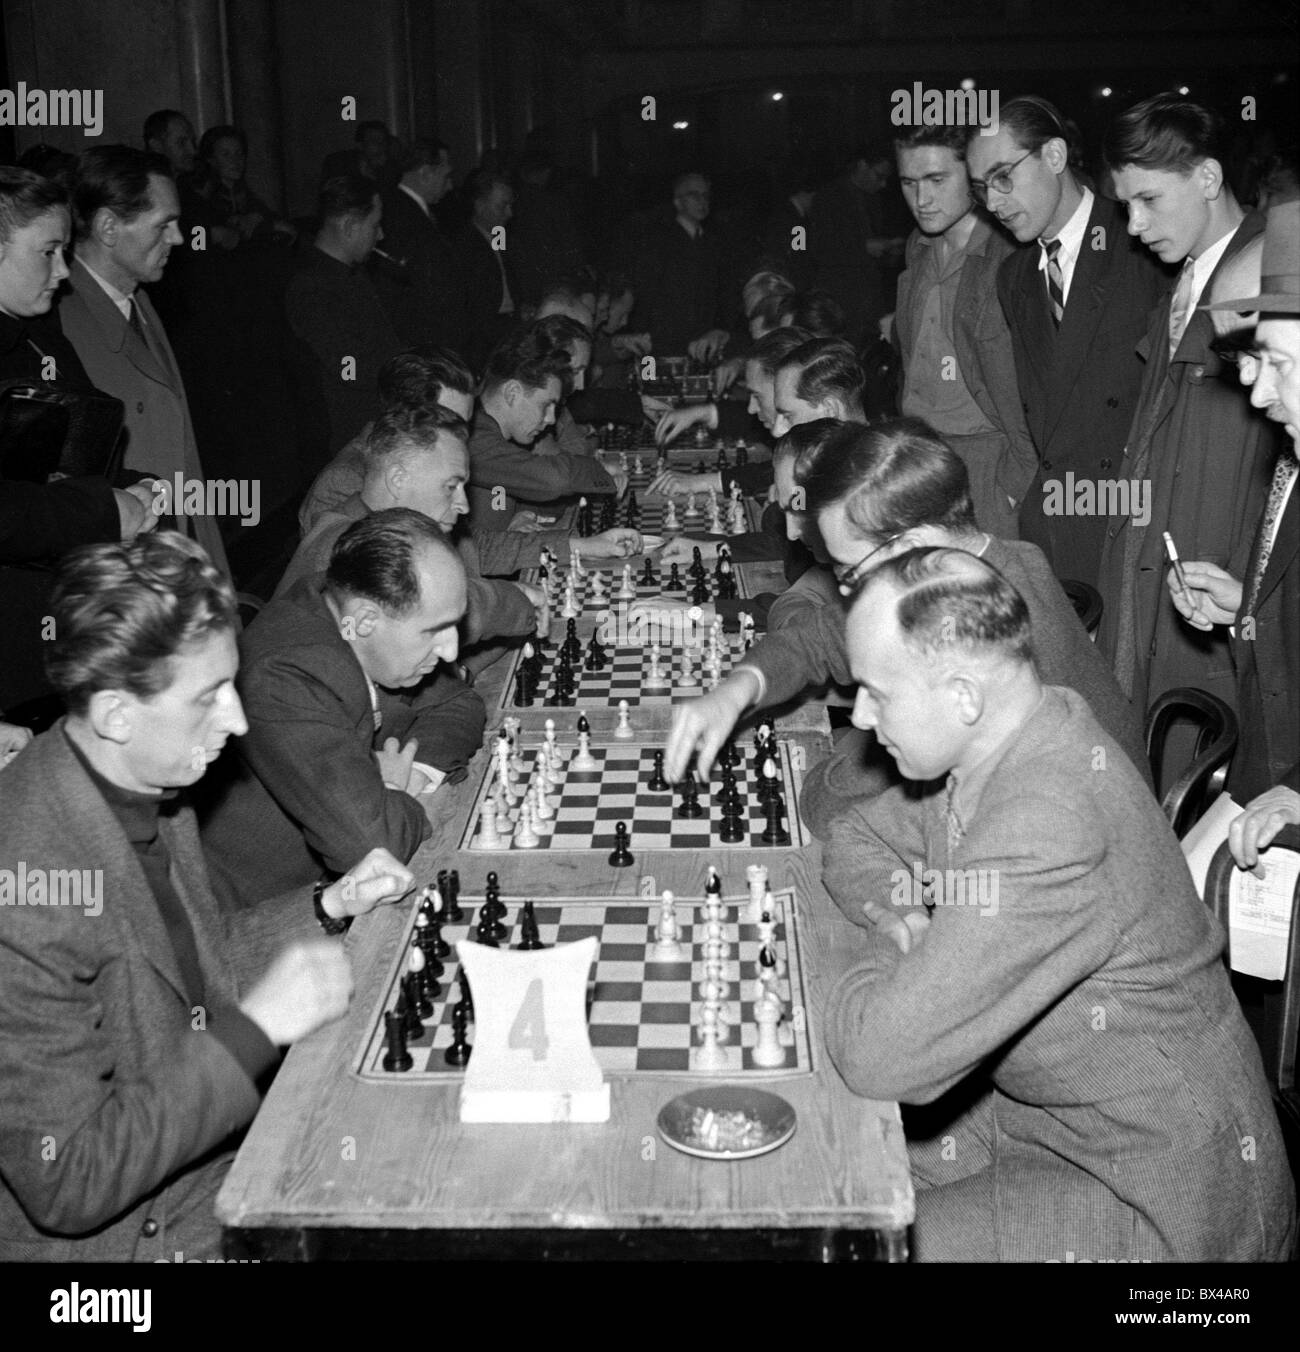 Prag, 1949. Schachspieler engagieren sich in super schnellen Schachspiel in "Lucerna" Dance Hall. CTK Vintage Photo Stockfoto